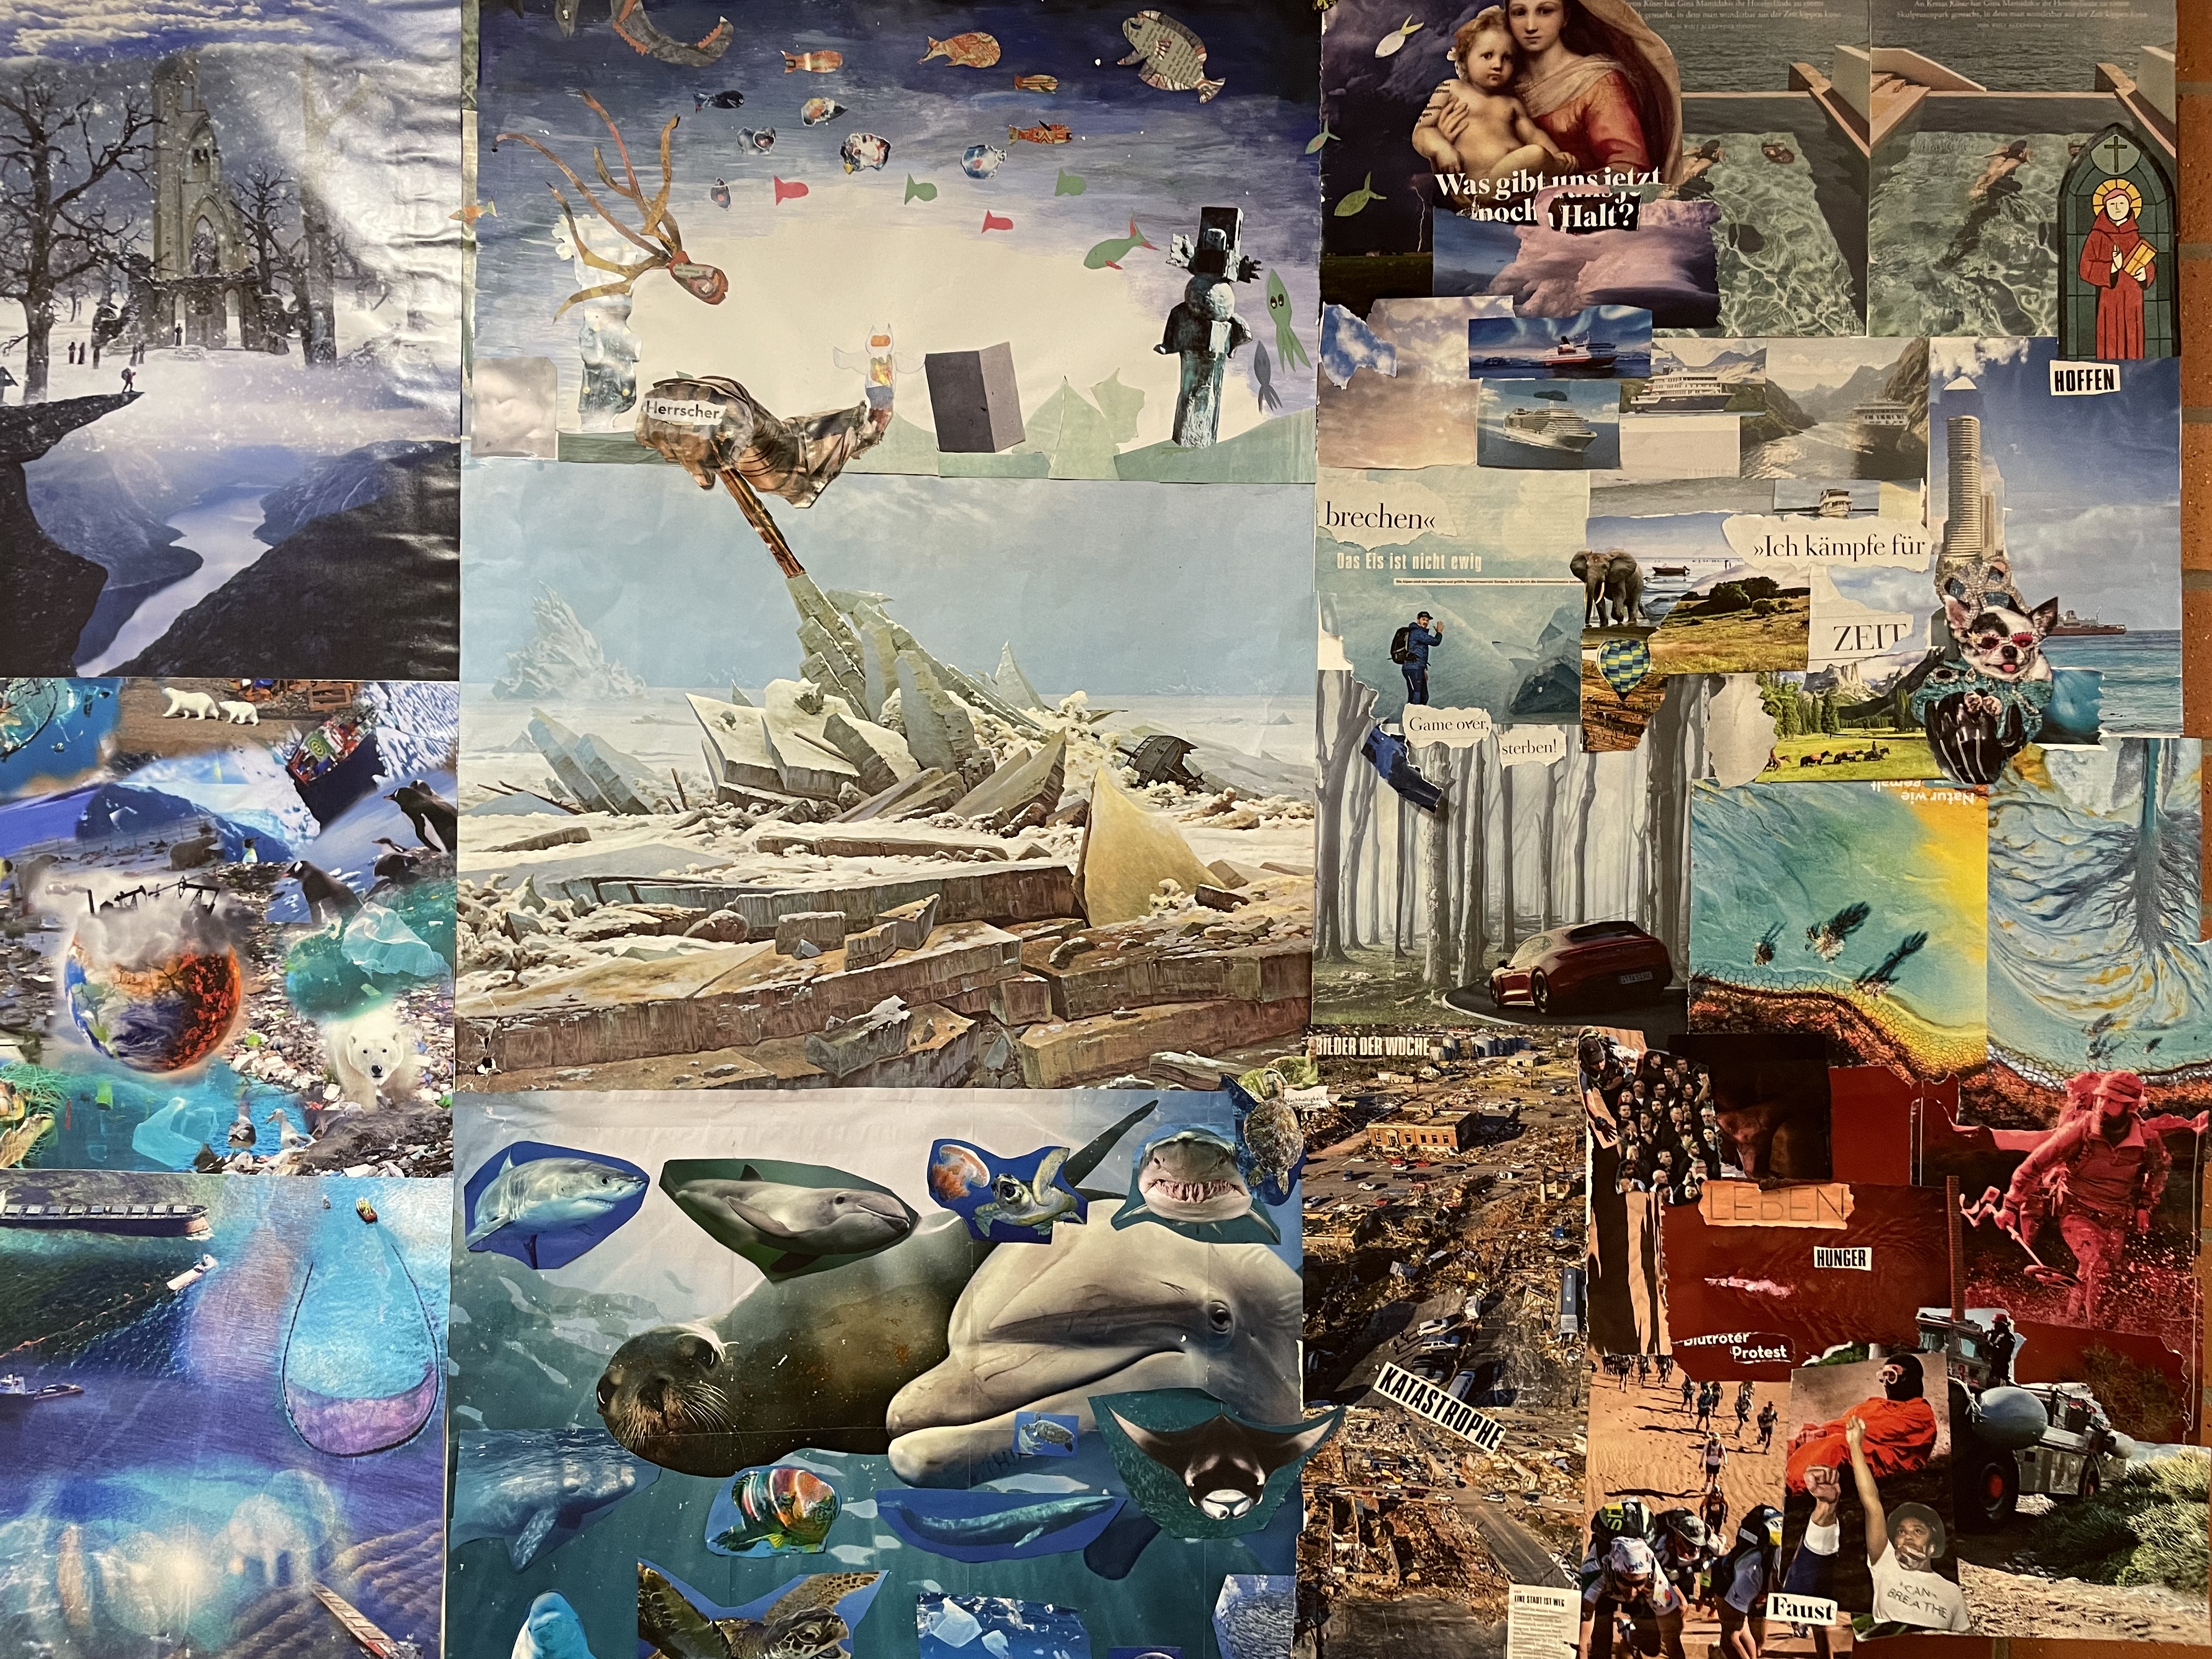 Viele Bilder und Texte aus Zeitschriften sind zu einer Collage zusammengestellt, die Tiere (Eisbären, Meerestiere) und Umweltzerstörung durch den Menschen.  